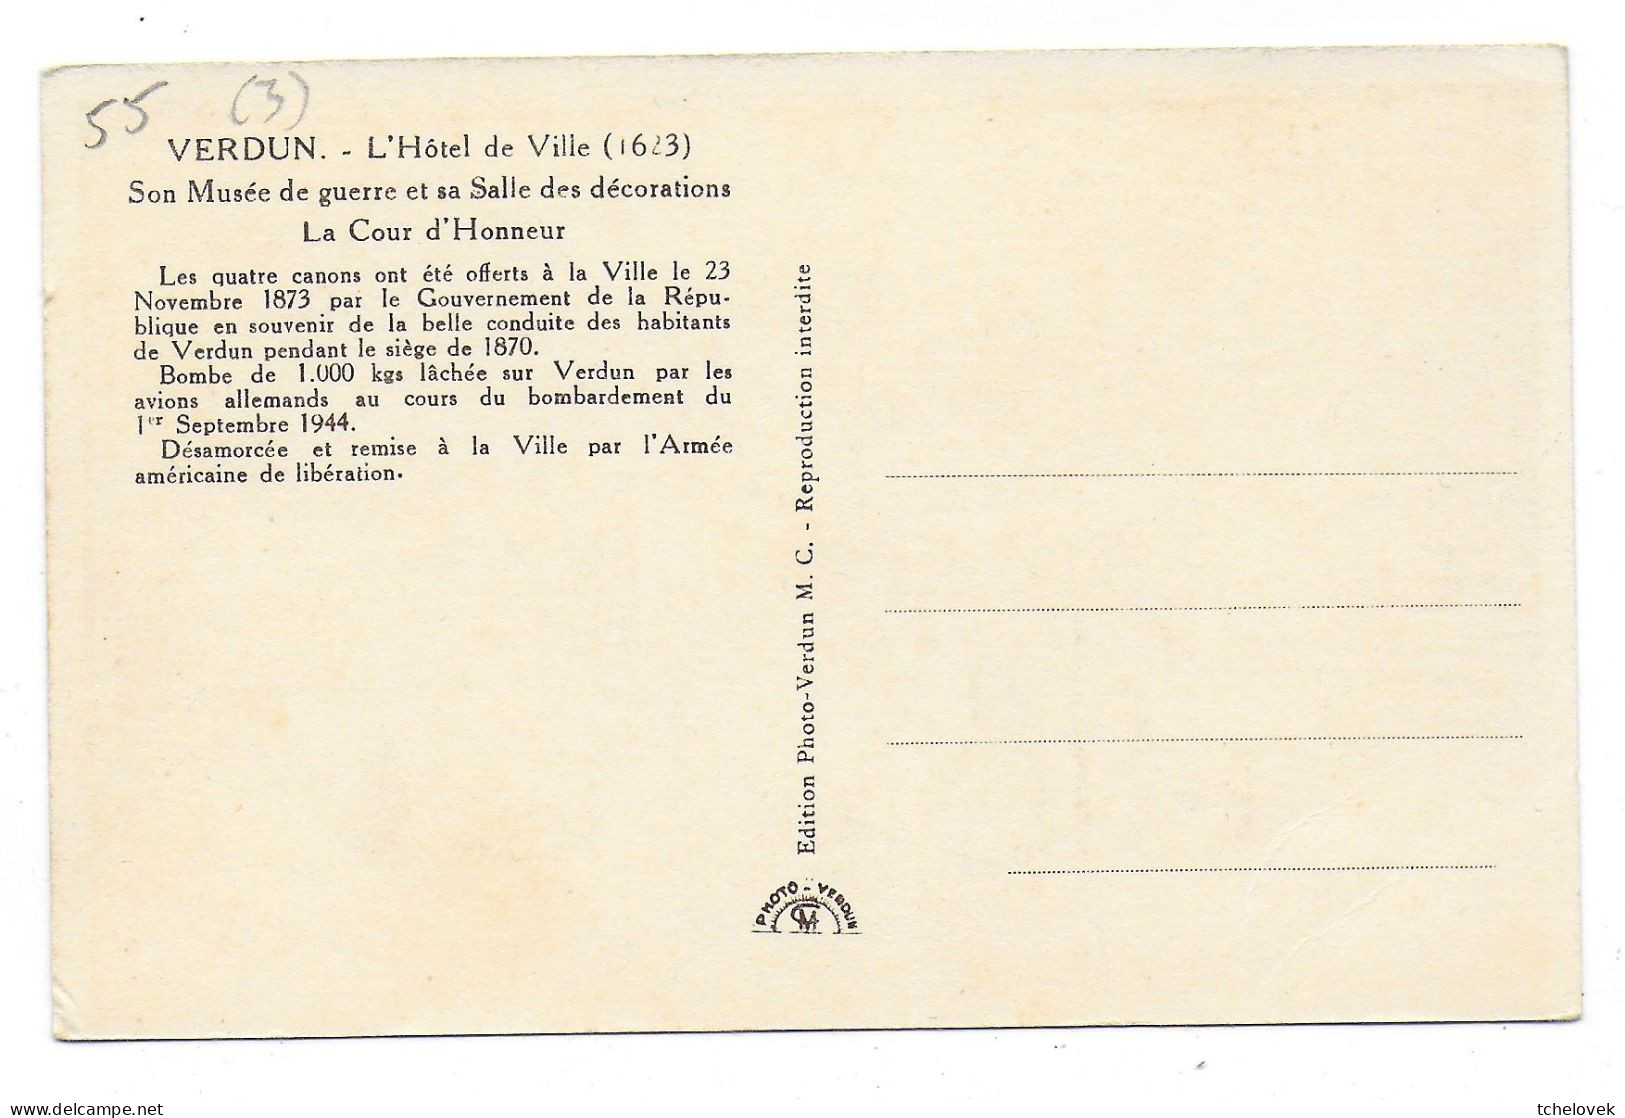 (55). Verdun. 67 Tranchée des Baionnettes & 324 Les portes de Verdun & (3) & (4)